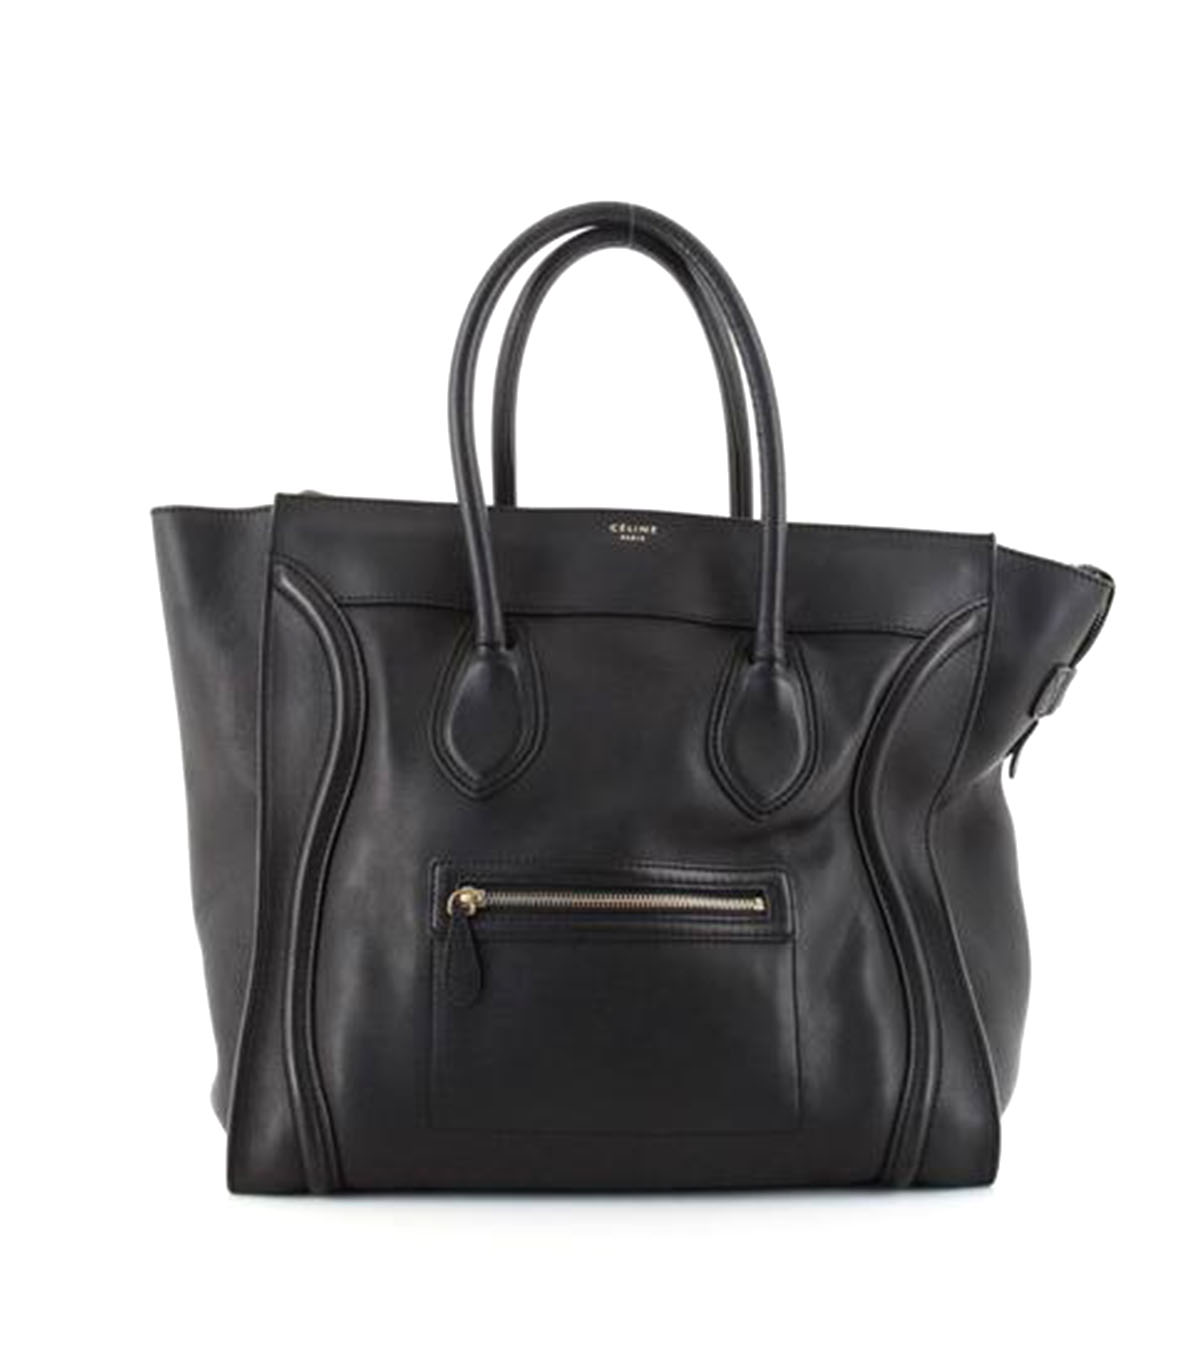 Celine Luggage Bag Smooth Leather Medium